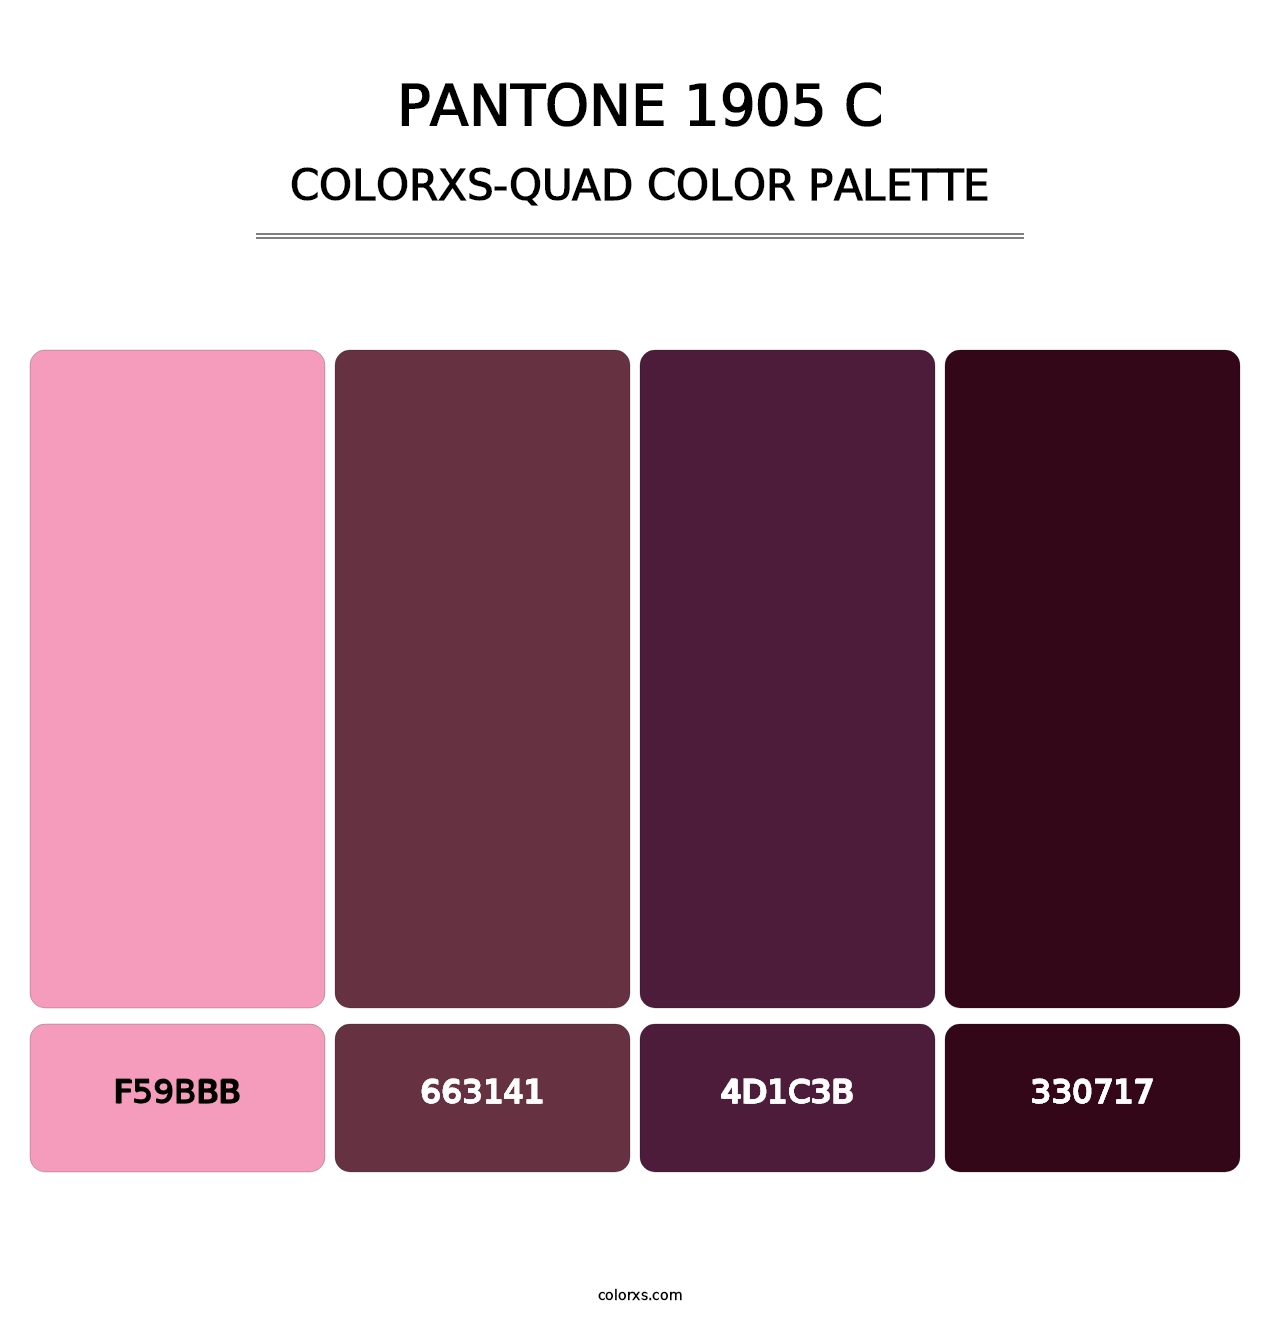 PANTONE 1905 C - Colorxs Quad Palette